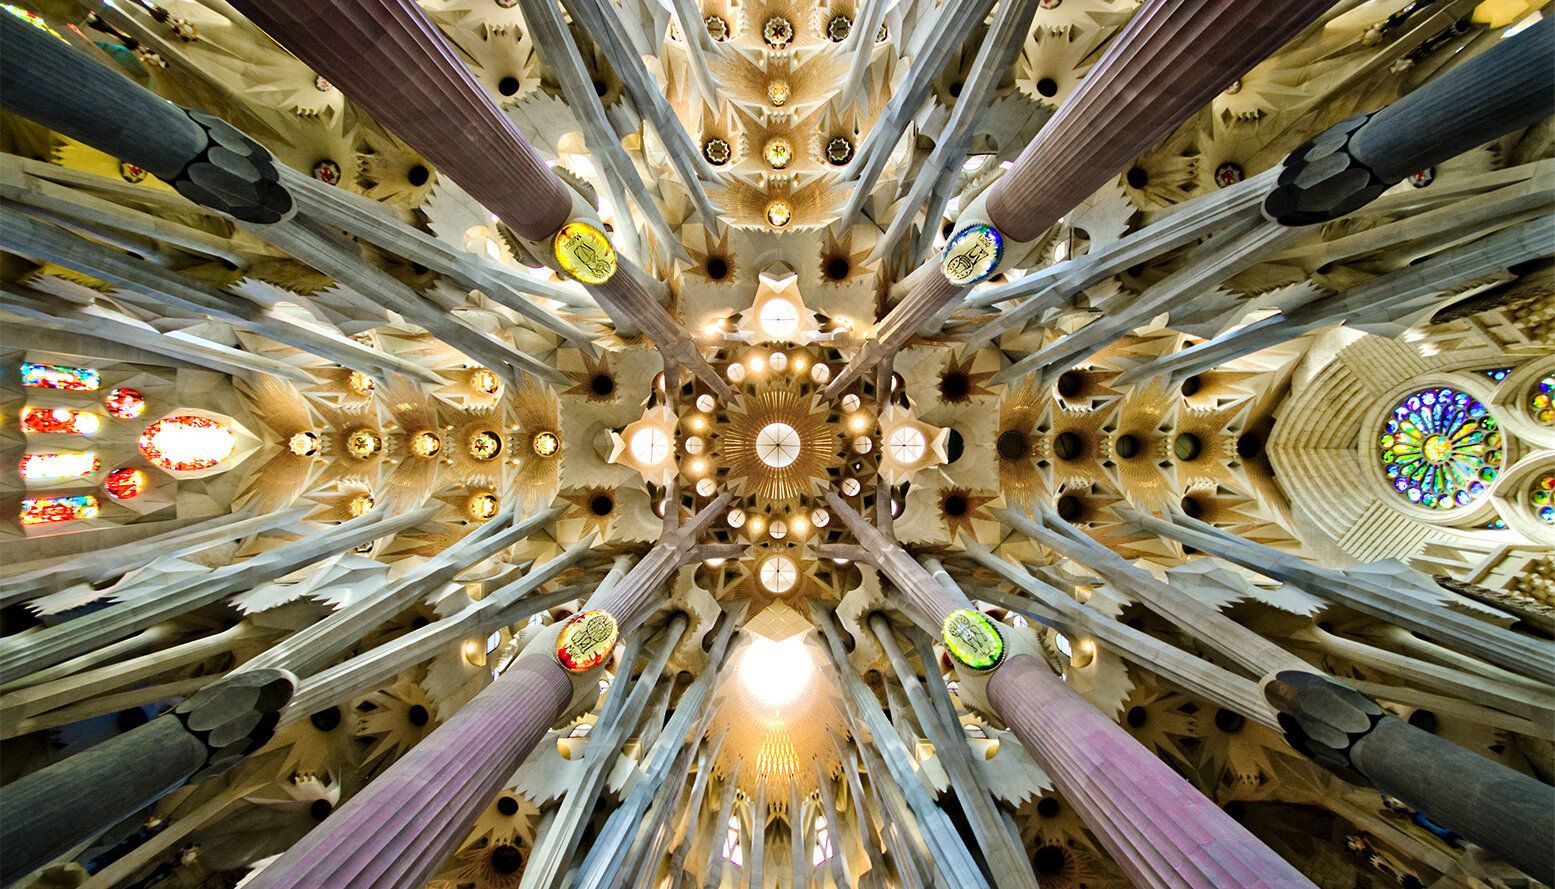 A Sagrada Familia templomhajójának különleges mennyezete, amelyhez a fákból merített ihletet. Az oszlopok a fák törzsét, a mennyezet mintázata az ágakat idézik. - forrás: wikipedia